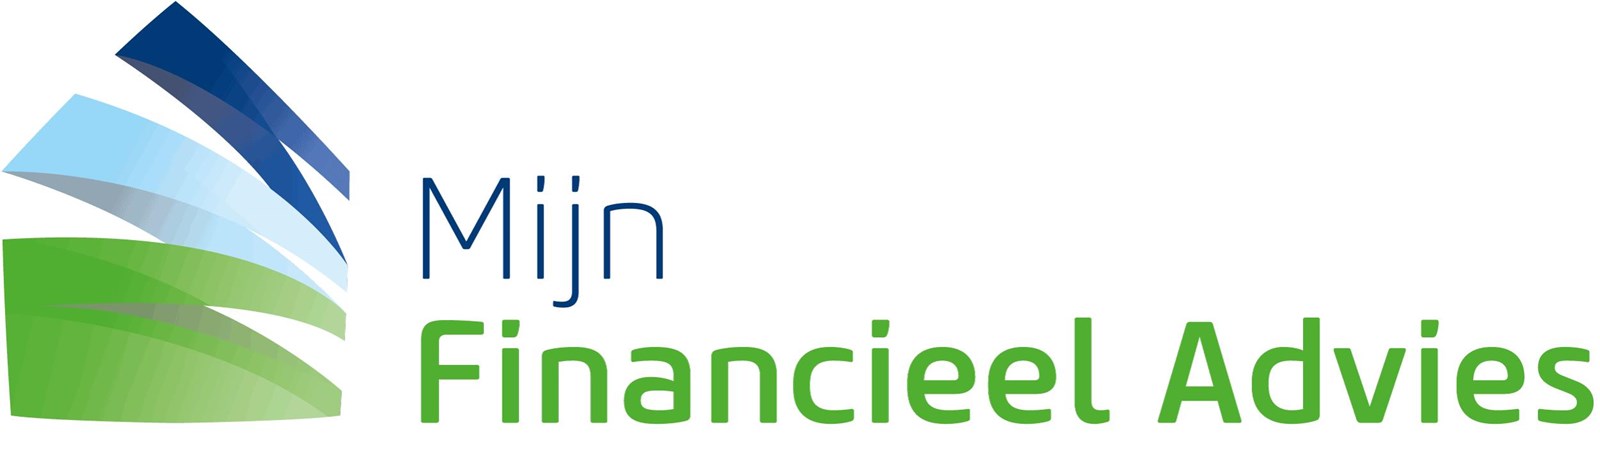 Logo van Mijn Financieel Advies